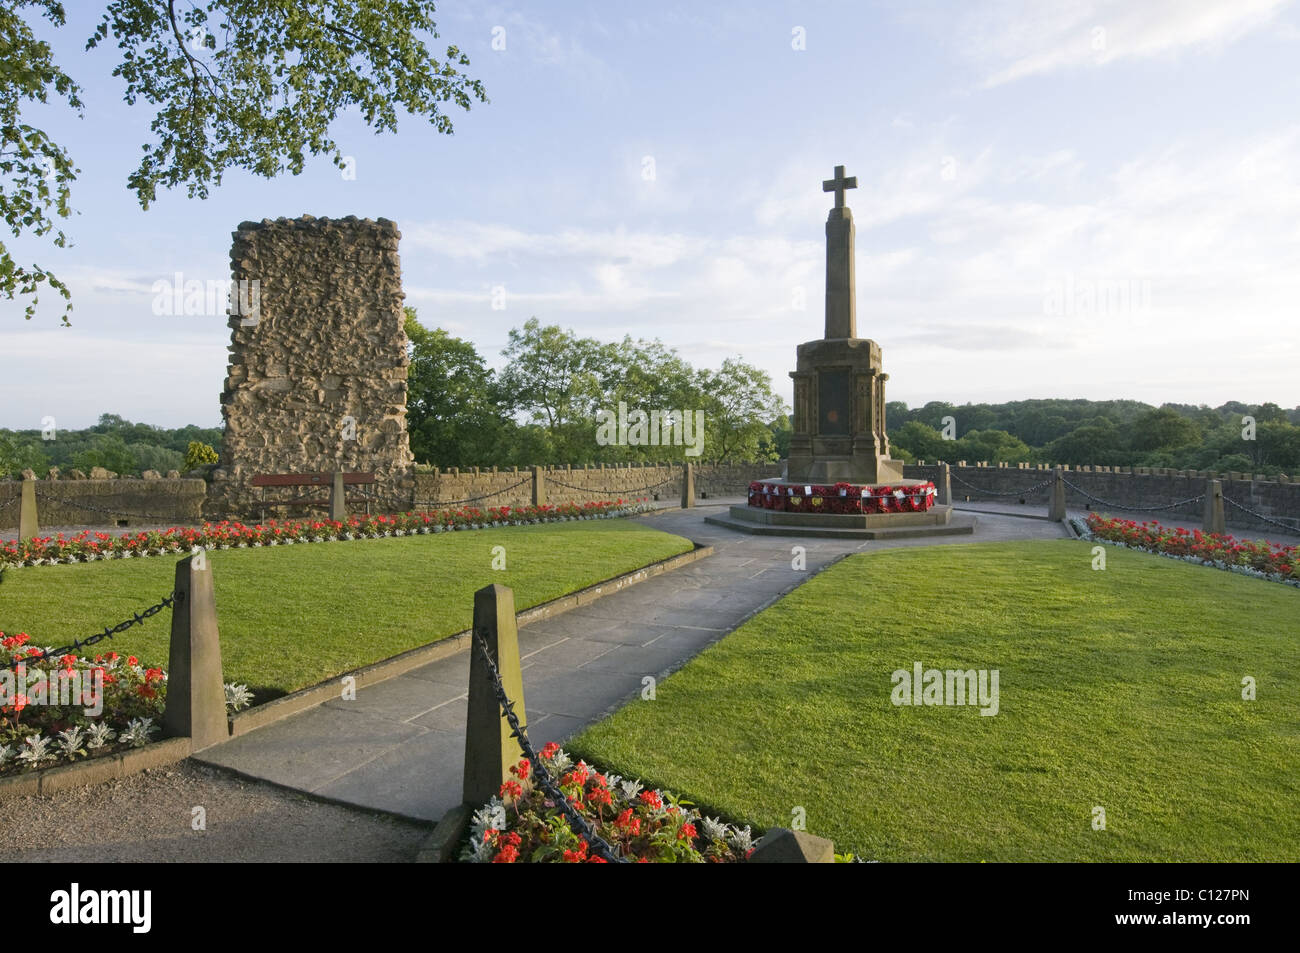 Papaveri rossi nel WW1 e WW2 monumento commemorativo di guerra (giardini paesaggistici panoramici, rovine storiche, fiori) - Knaresborough Castle Garden, North Yorkshire Inghilterra UK. Foto Stock